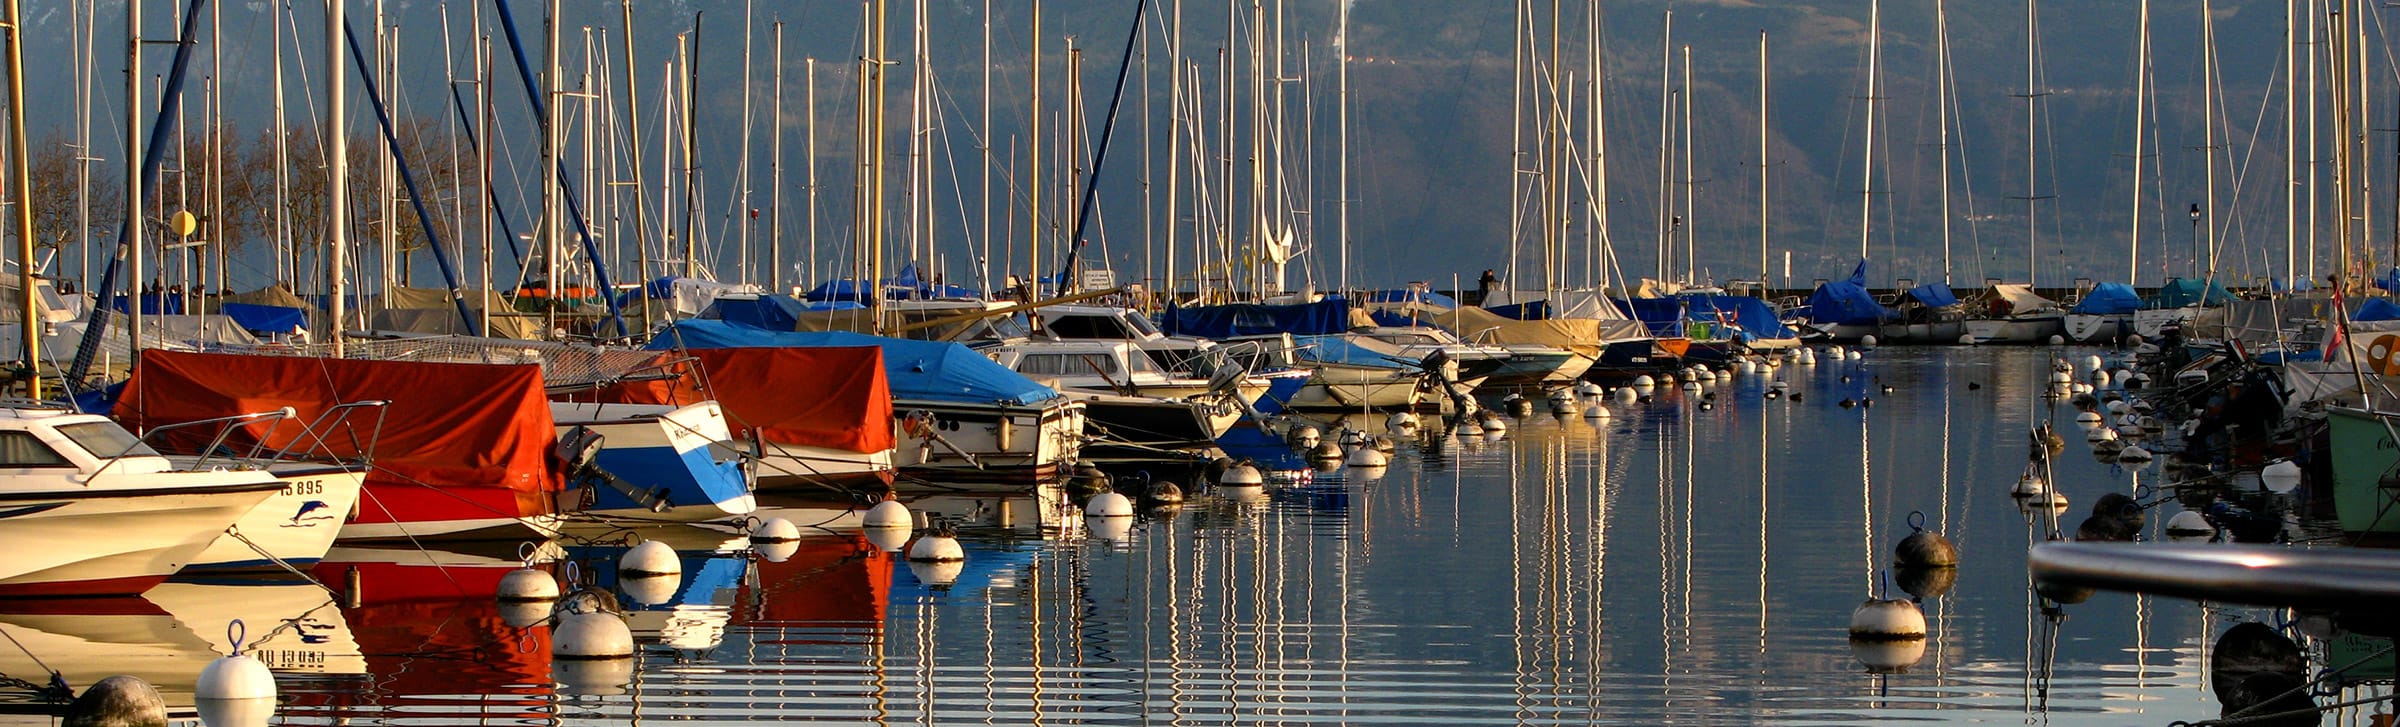 Geneva marina